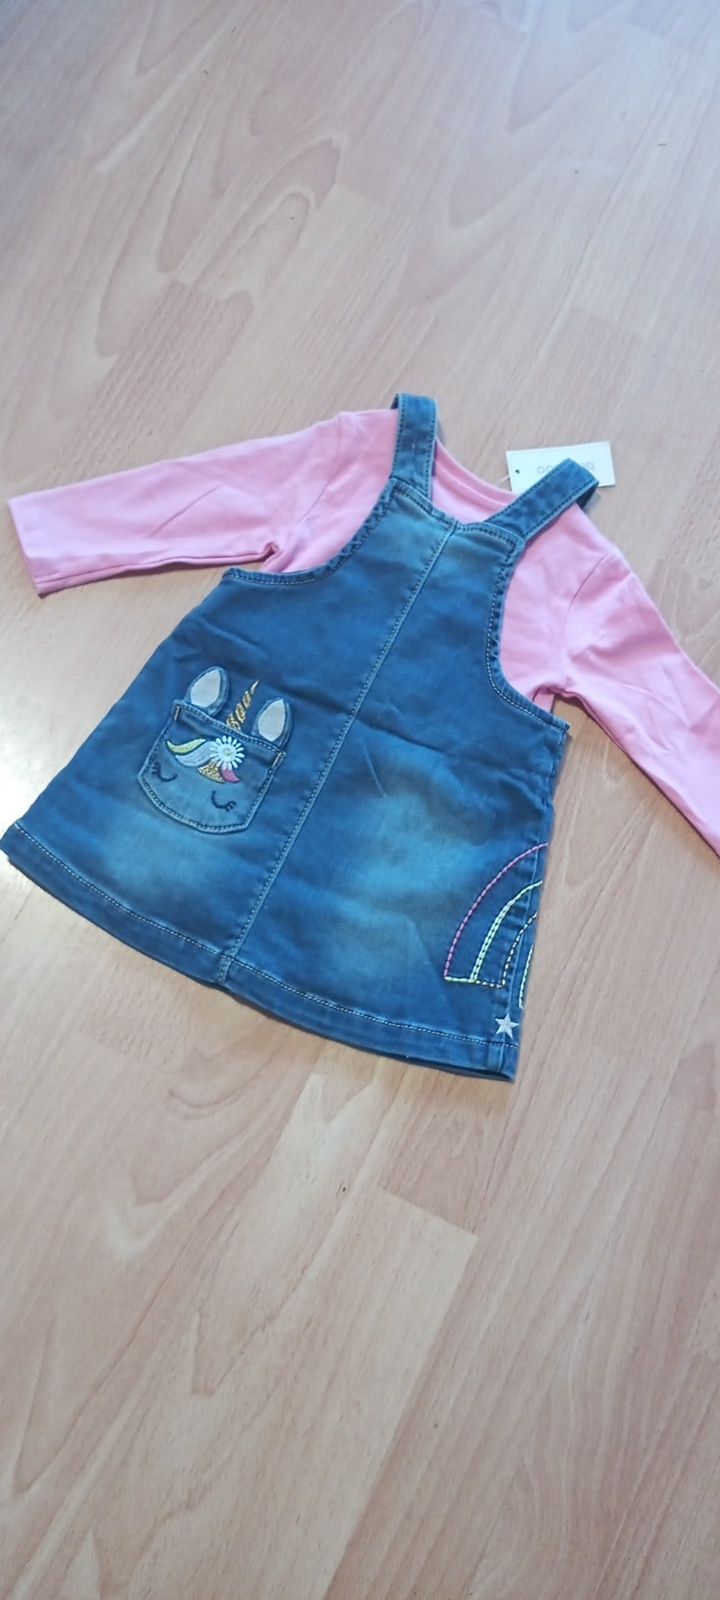 Zestaw ubranek dla dziewczynki 3-6 miesięcy, 68 cm, Blue Zoo